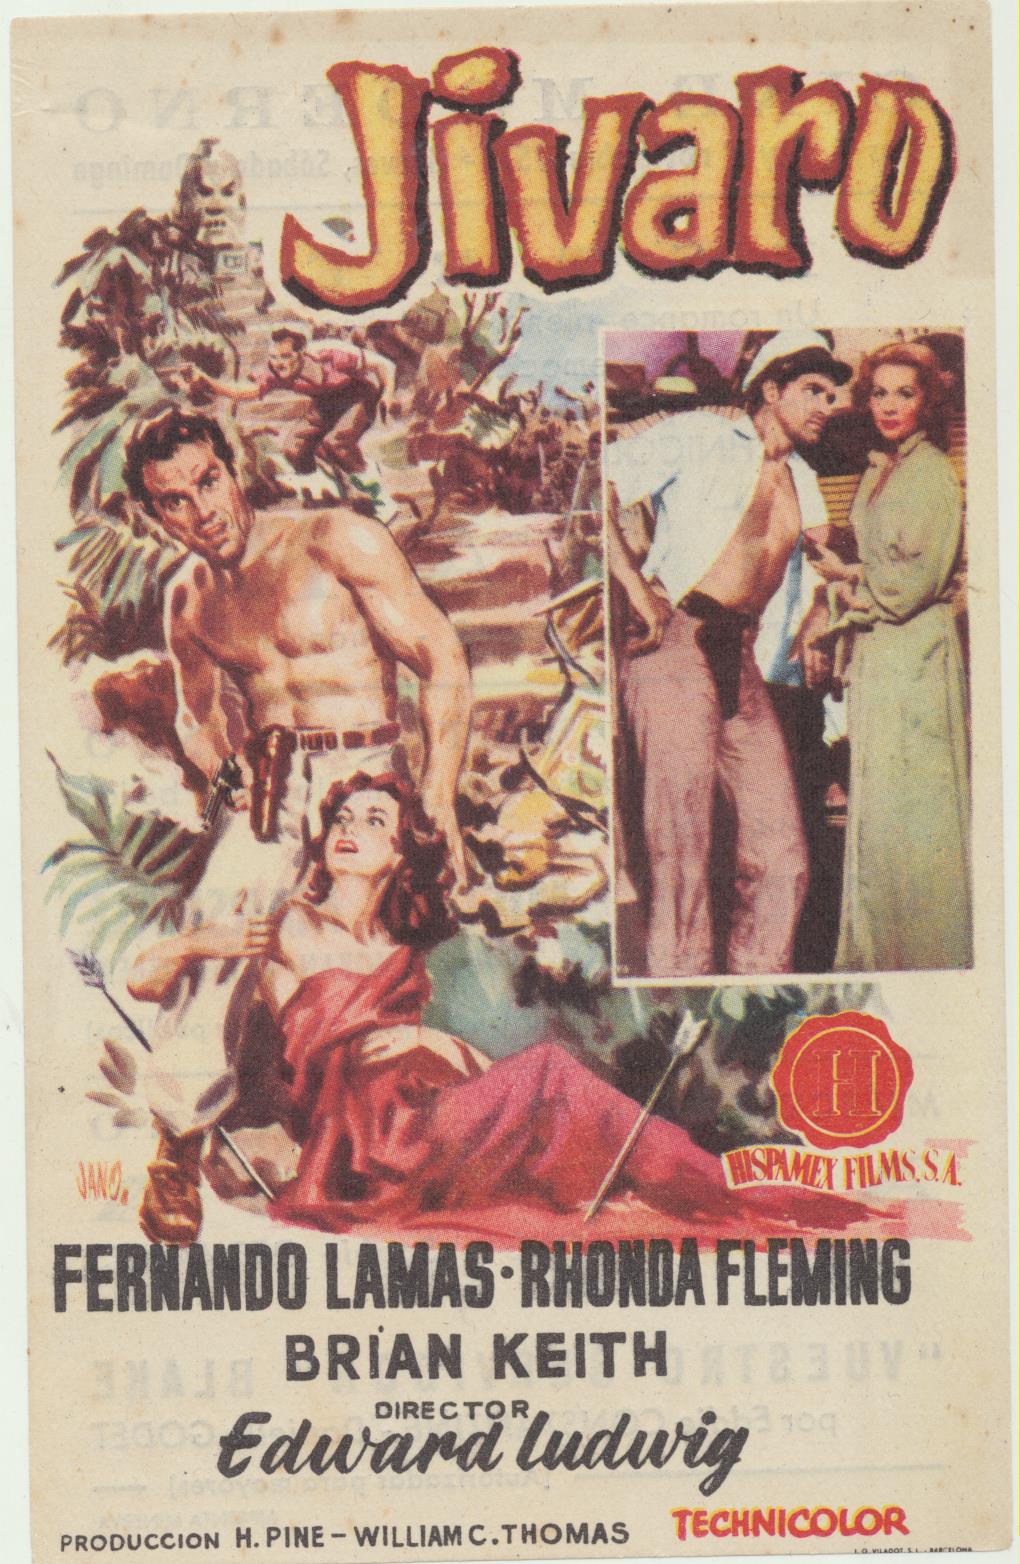 Jivaro. Sencillo de Hispamex. Cine Moderno, 1957